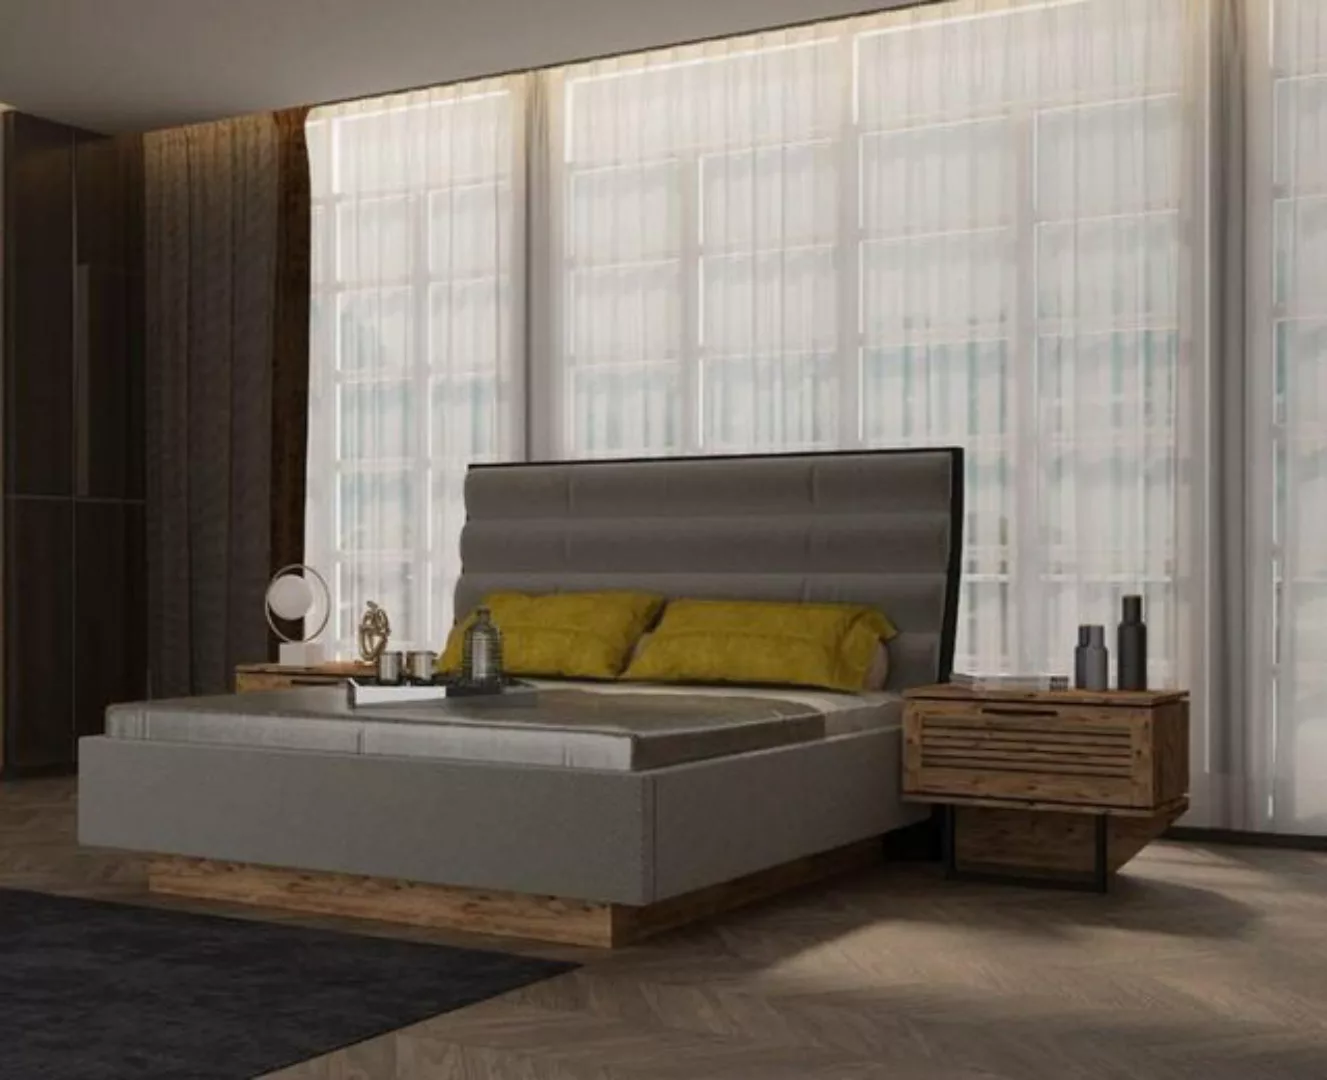 JVmoebel Bett Bett Bettrahmen Luxus Betten Design Luxus Möbel Holz Bettgest günstig online kaufen